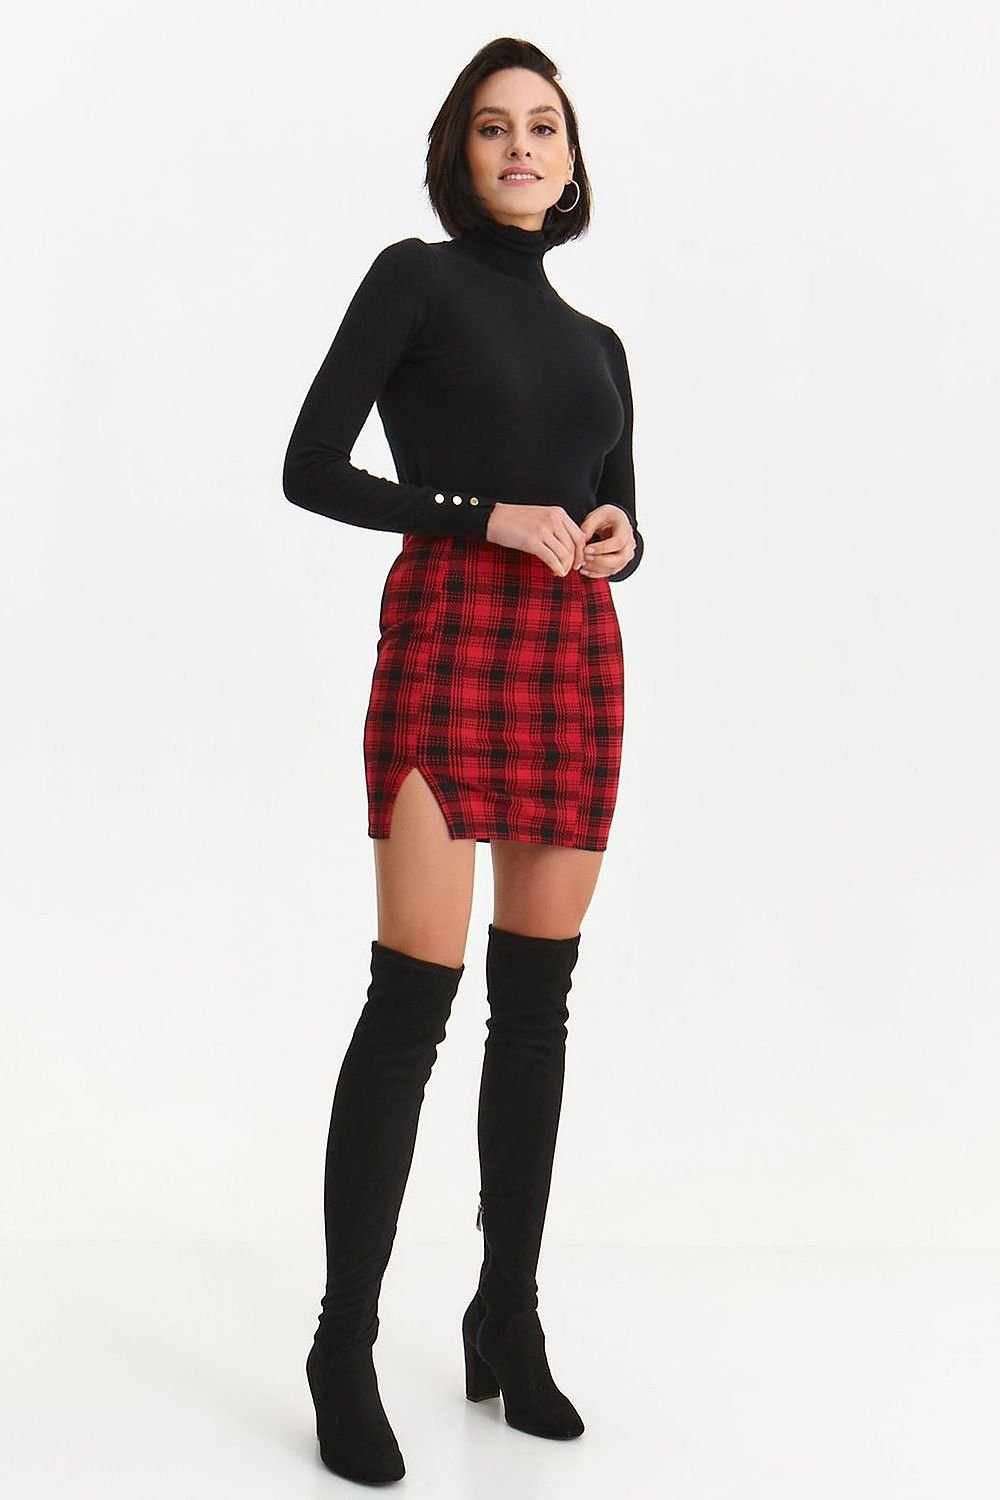 Jupe mini-jupe écossaise rouge et noire fendue, coupe droite élégante, parfaite pour une tenue tendance et chic.